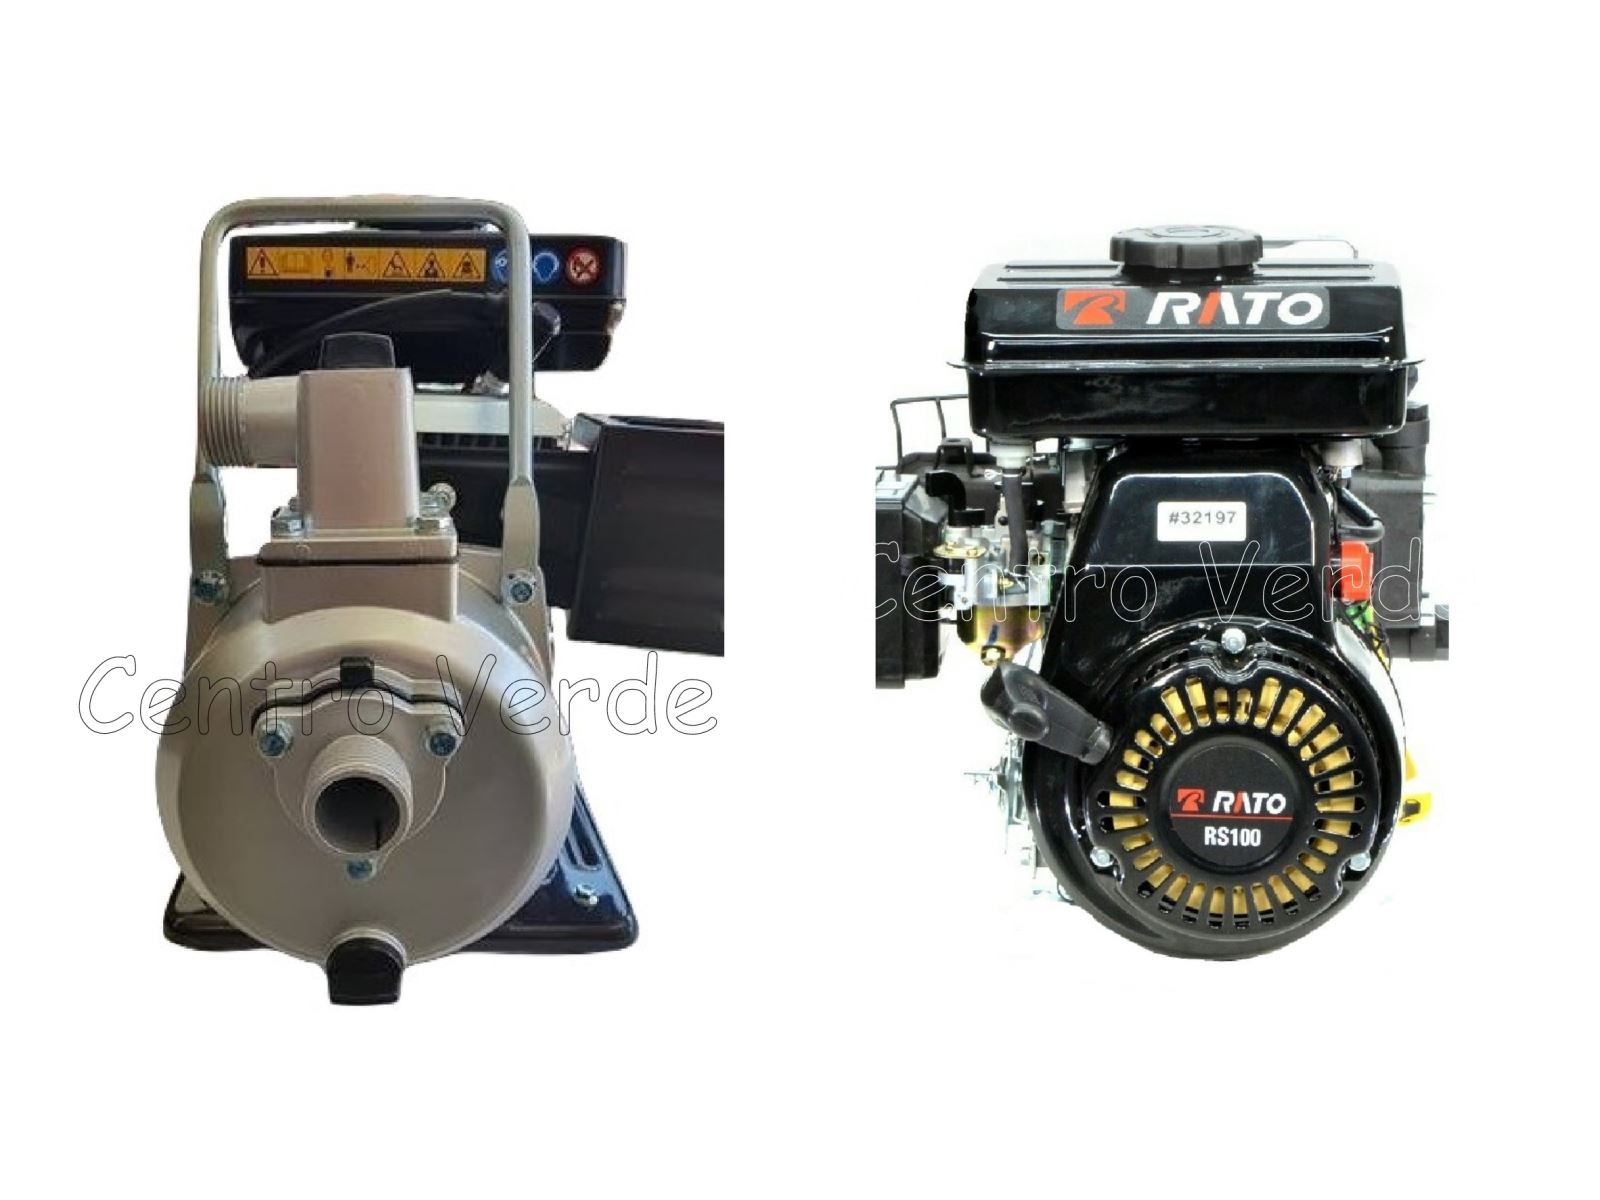 Motopompa Irrigazione RT25ZB20 Autoadescante con Motore RATO RS100 a Benzina